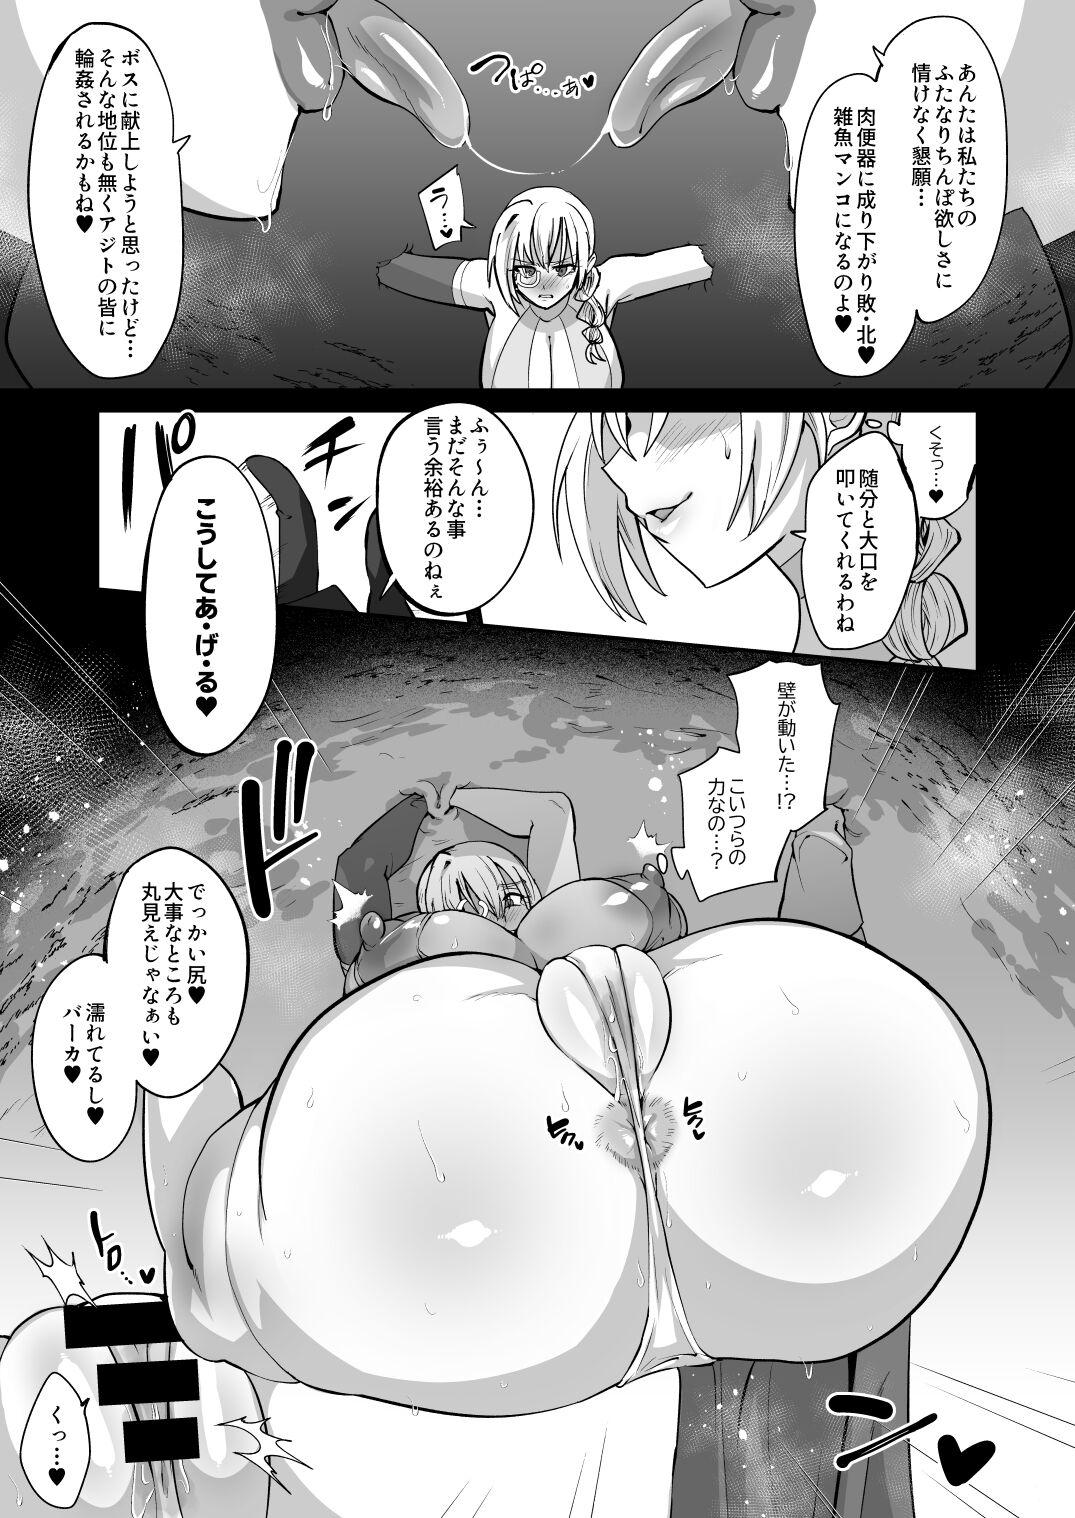 Magical Girl vs Futanari Combatant Sisters 8